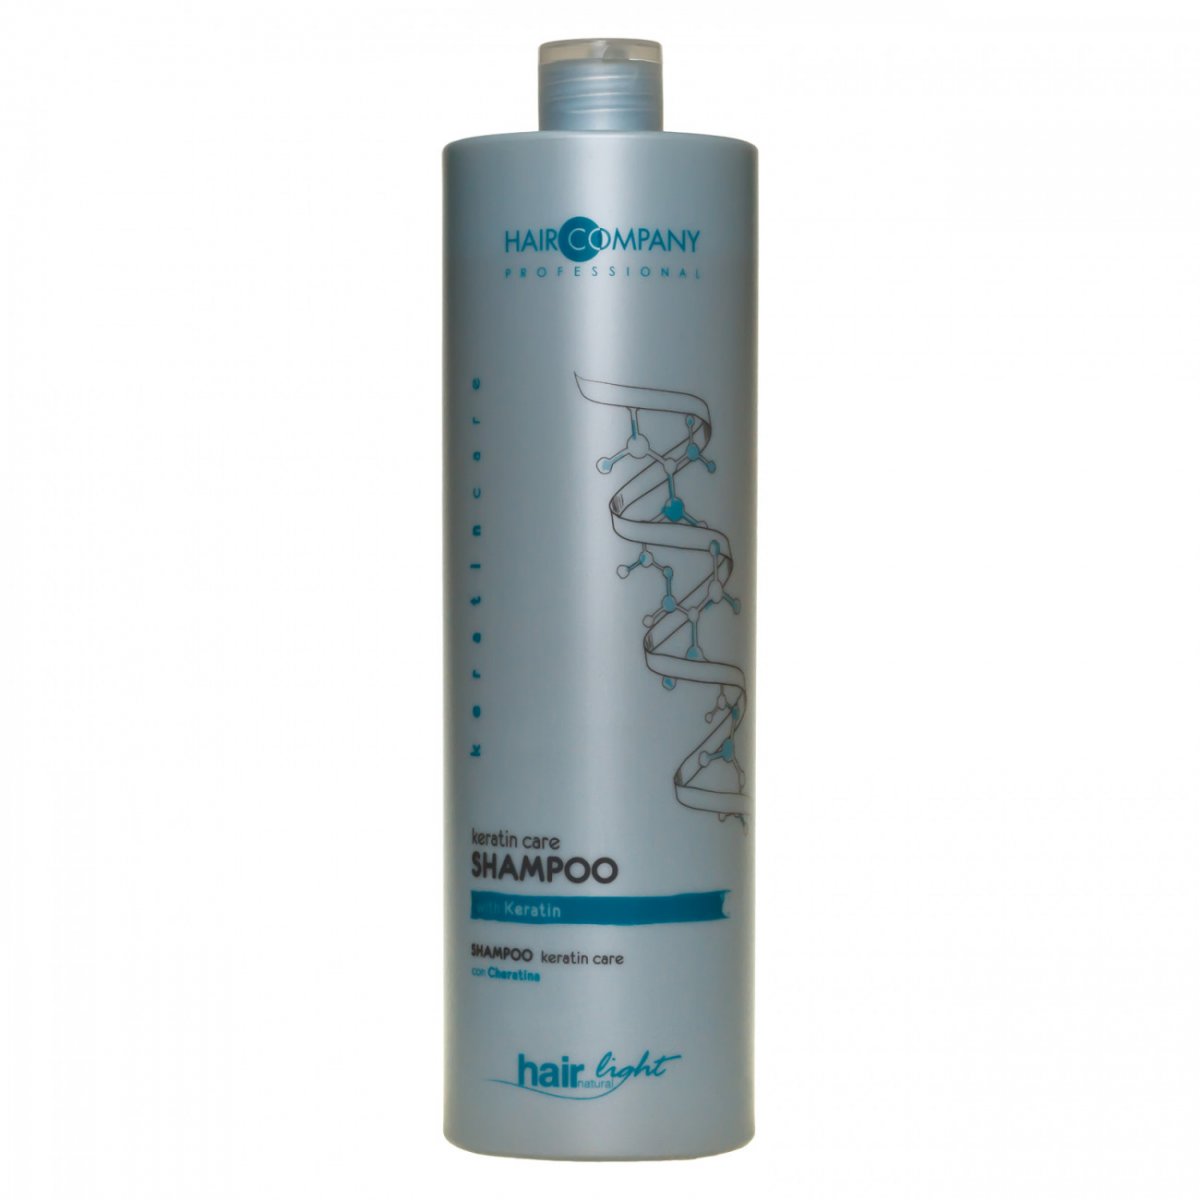 Купить Hair Company Professional Light Keratin Care Shampoo - Шампунь-уход для волос с кератином 1000 мл, Hair Company Professional (Италия)